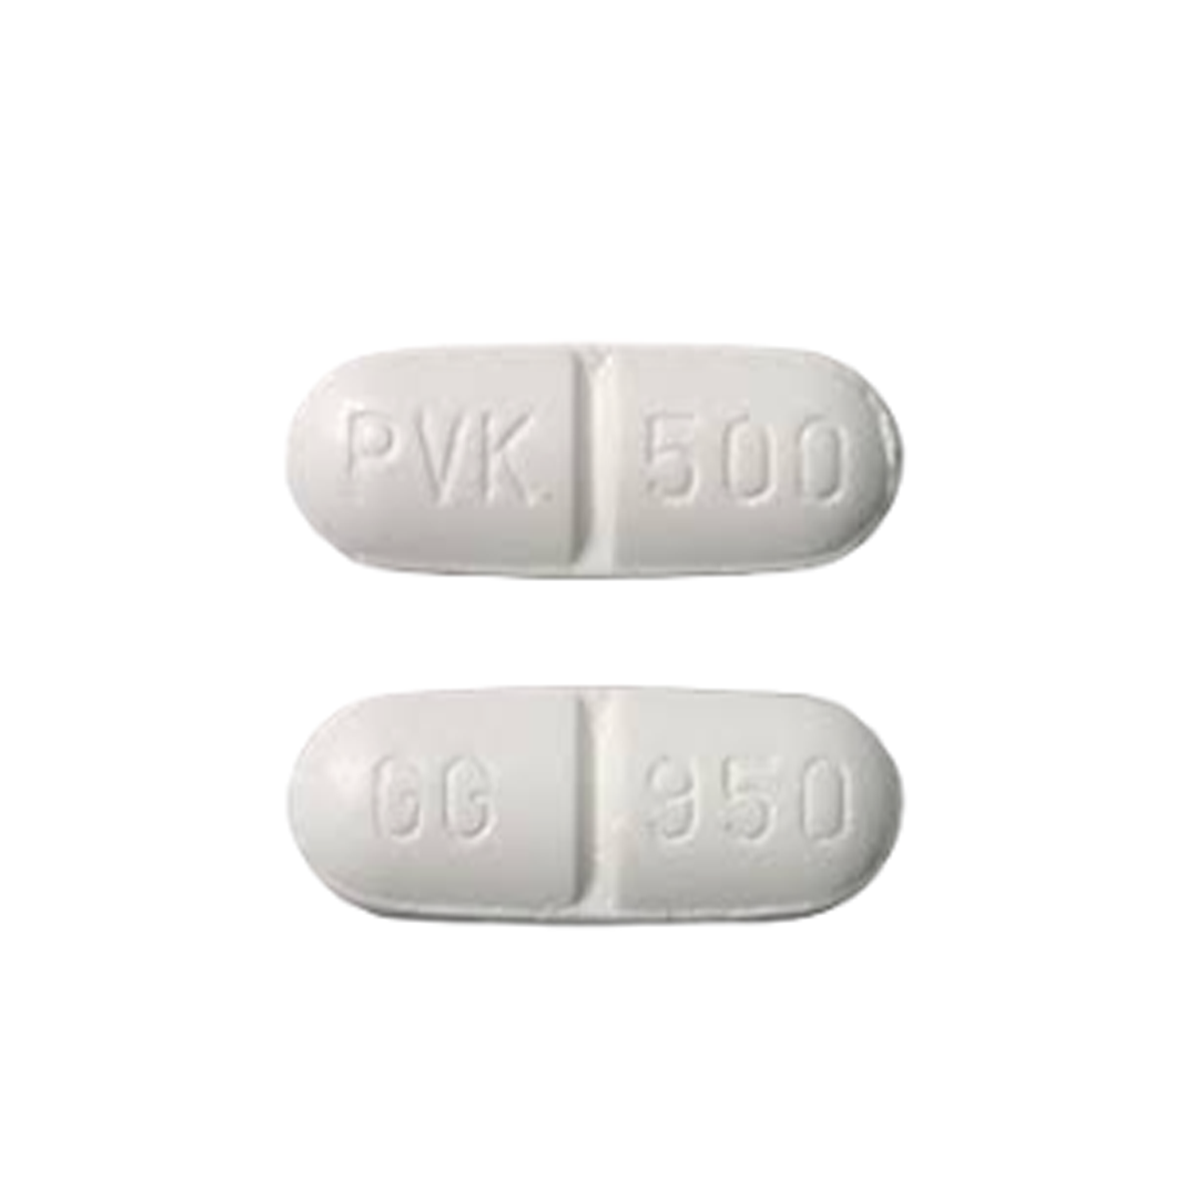 Penicillin V Potassium Tablet (VEETIDS)